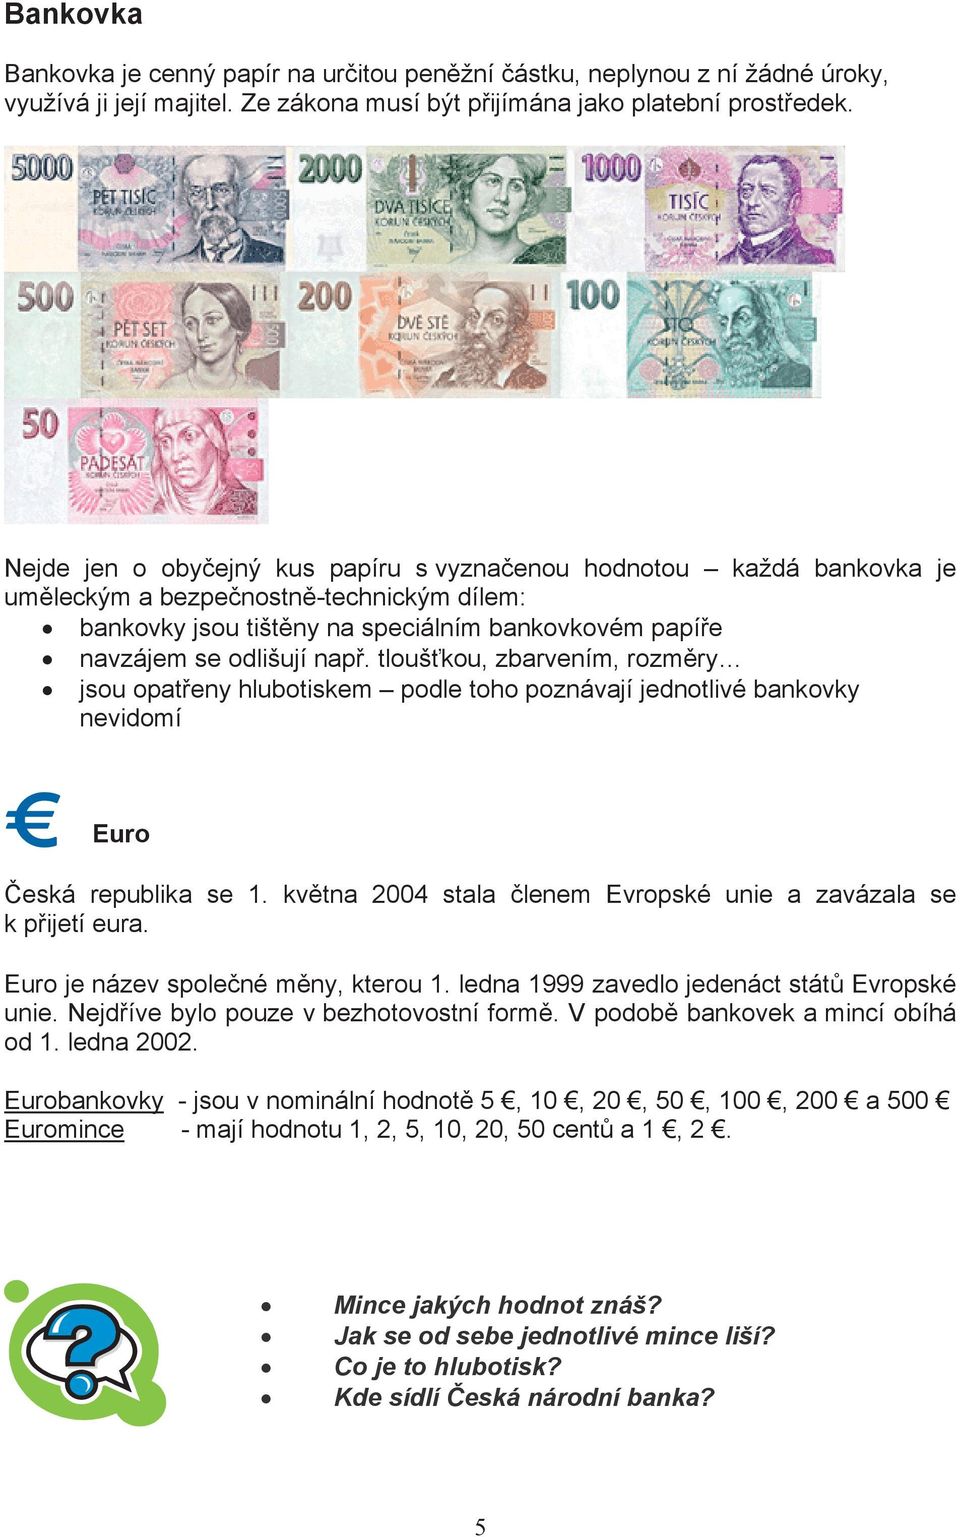 tlouškou, zbarvením, rozmry jsou opateny hlubotiskem podle toho poznávají jednotlivé bankovky nevidomí Euro eská republika se 1. kvtna 2004 stala lenem Evropské unie a zavázala se k pijetí eura.